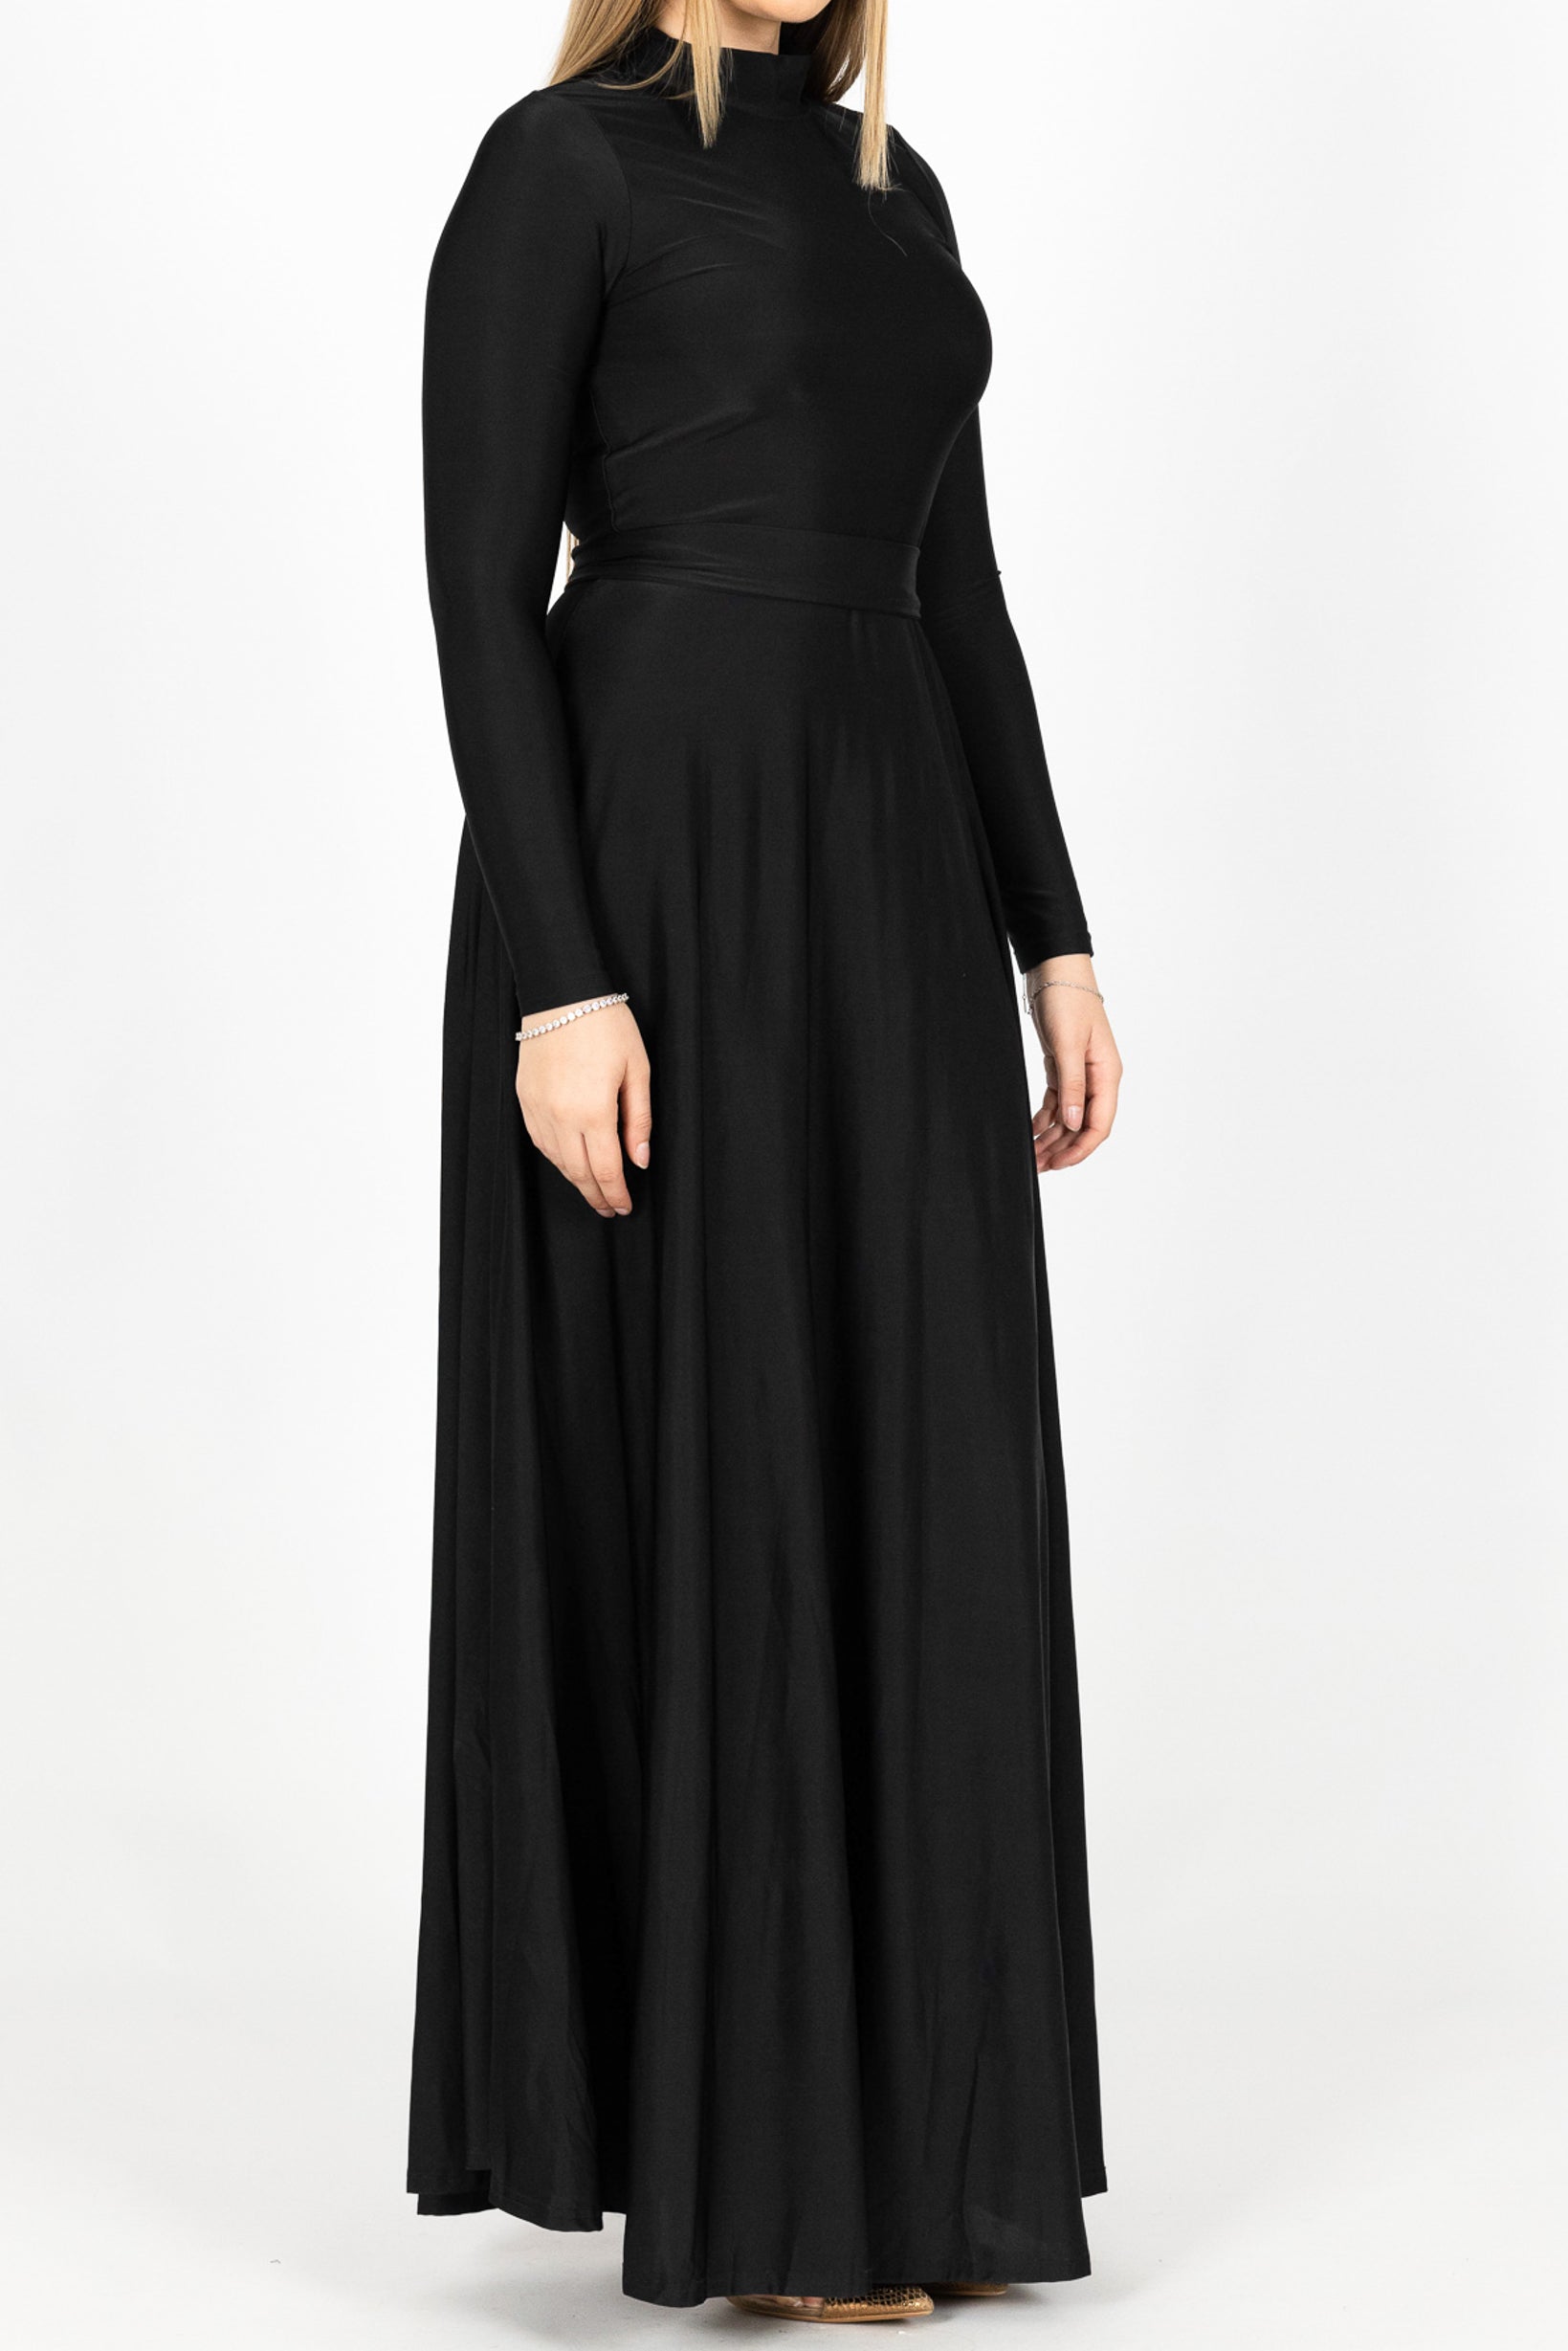 M7877Black-dress-abaya